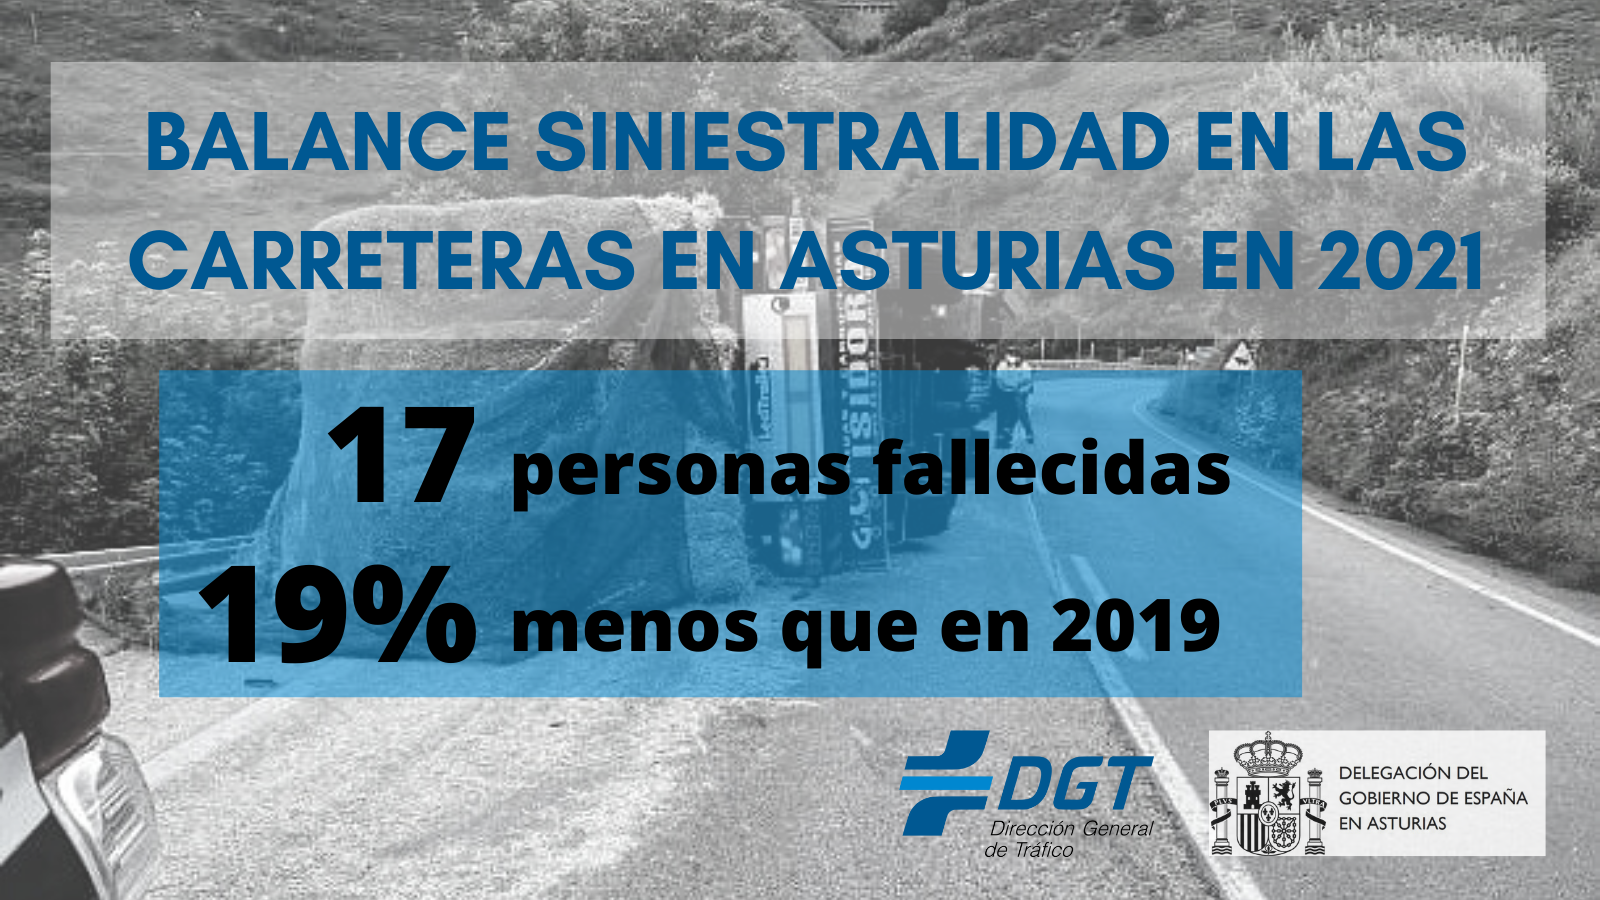 17 personas fallecieron en accidentes de tráfico en Asturias en 2021 